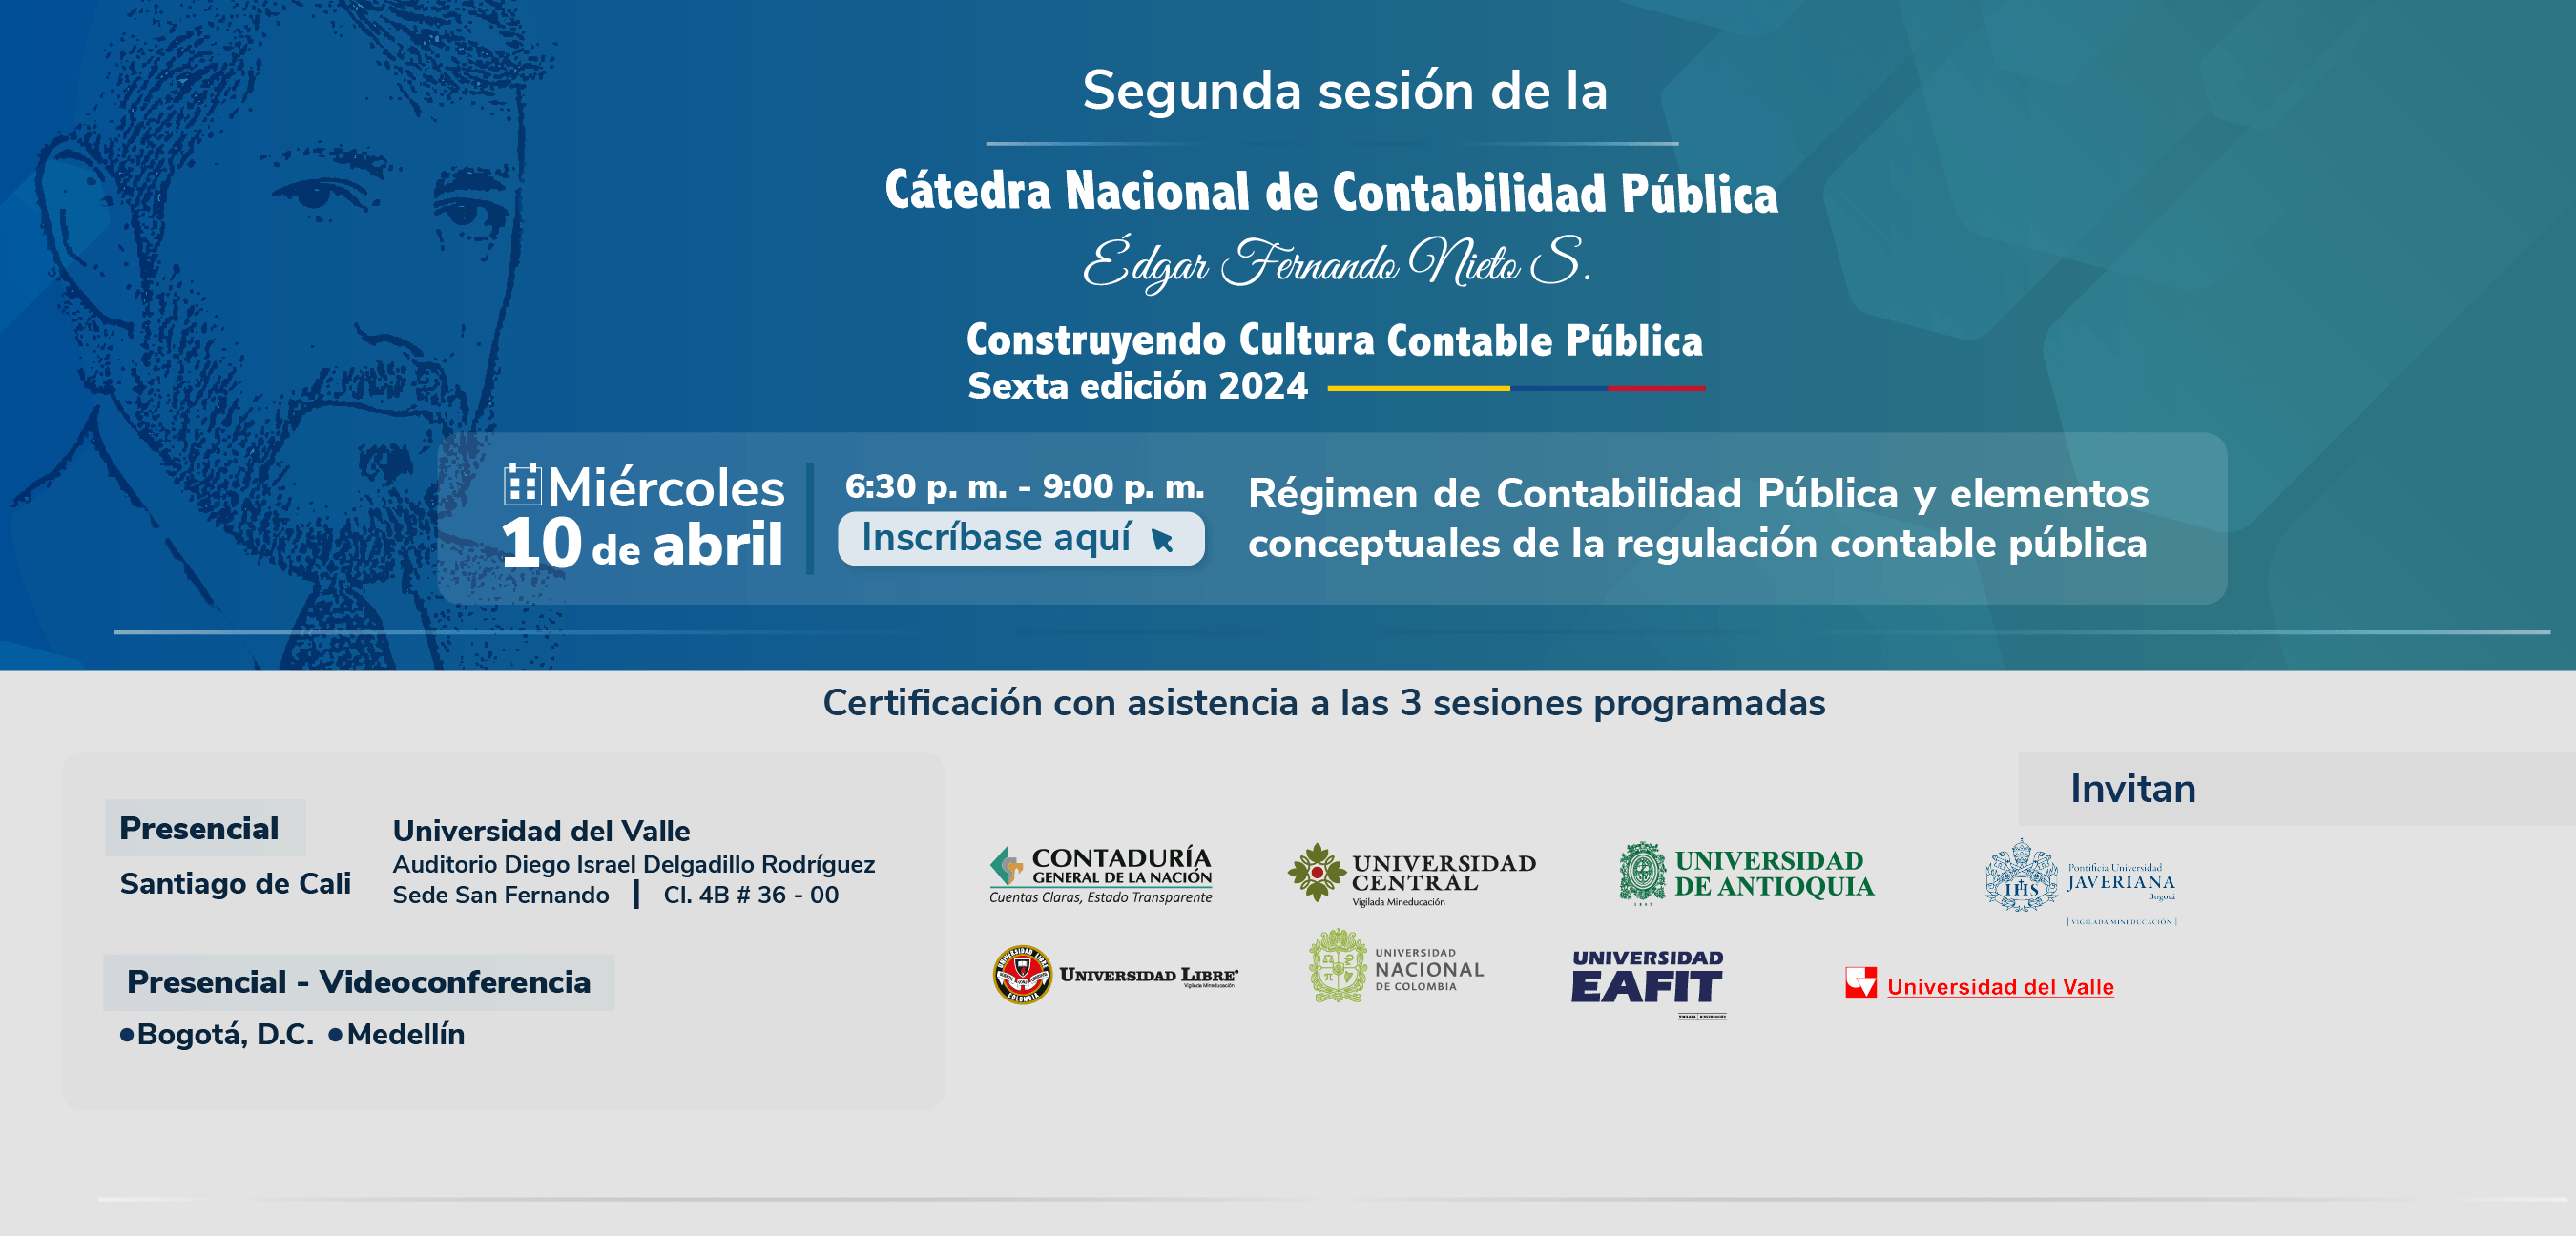 Participe en la segunda sesión de la Cátedra Nacional de Contabilidad Pública Édgar Fernando Nieto Sánchez